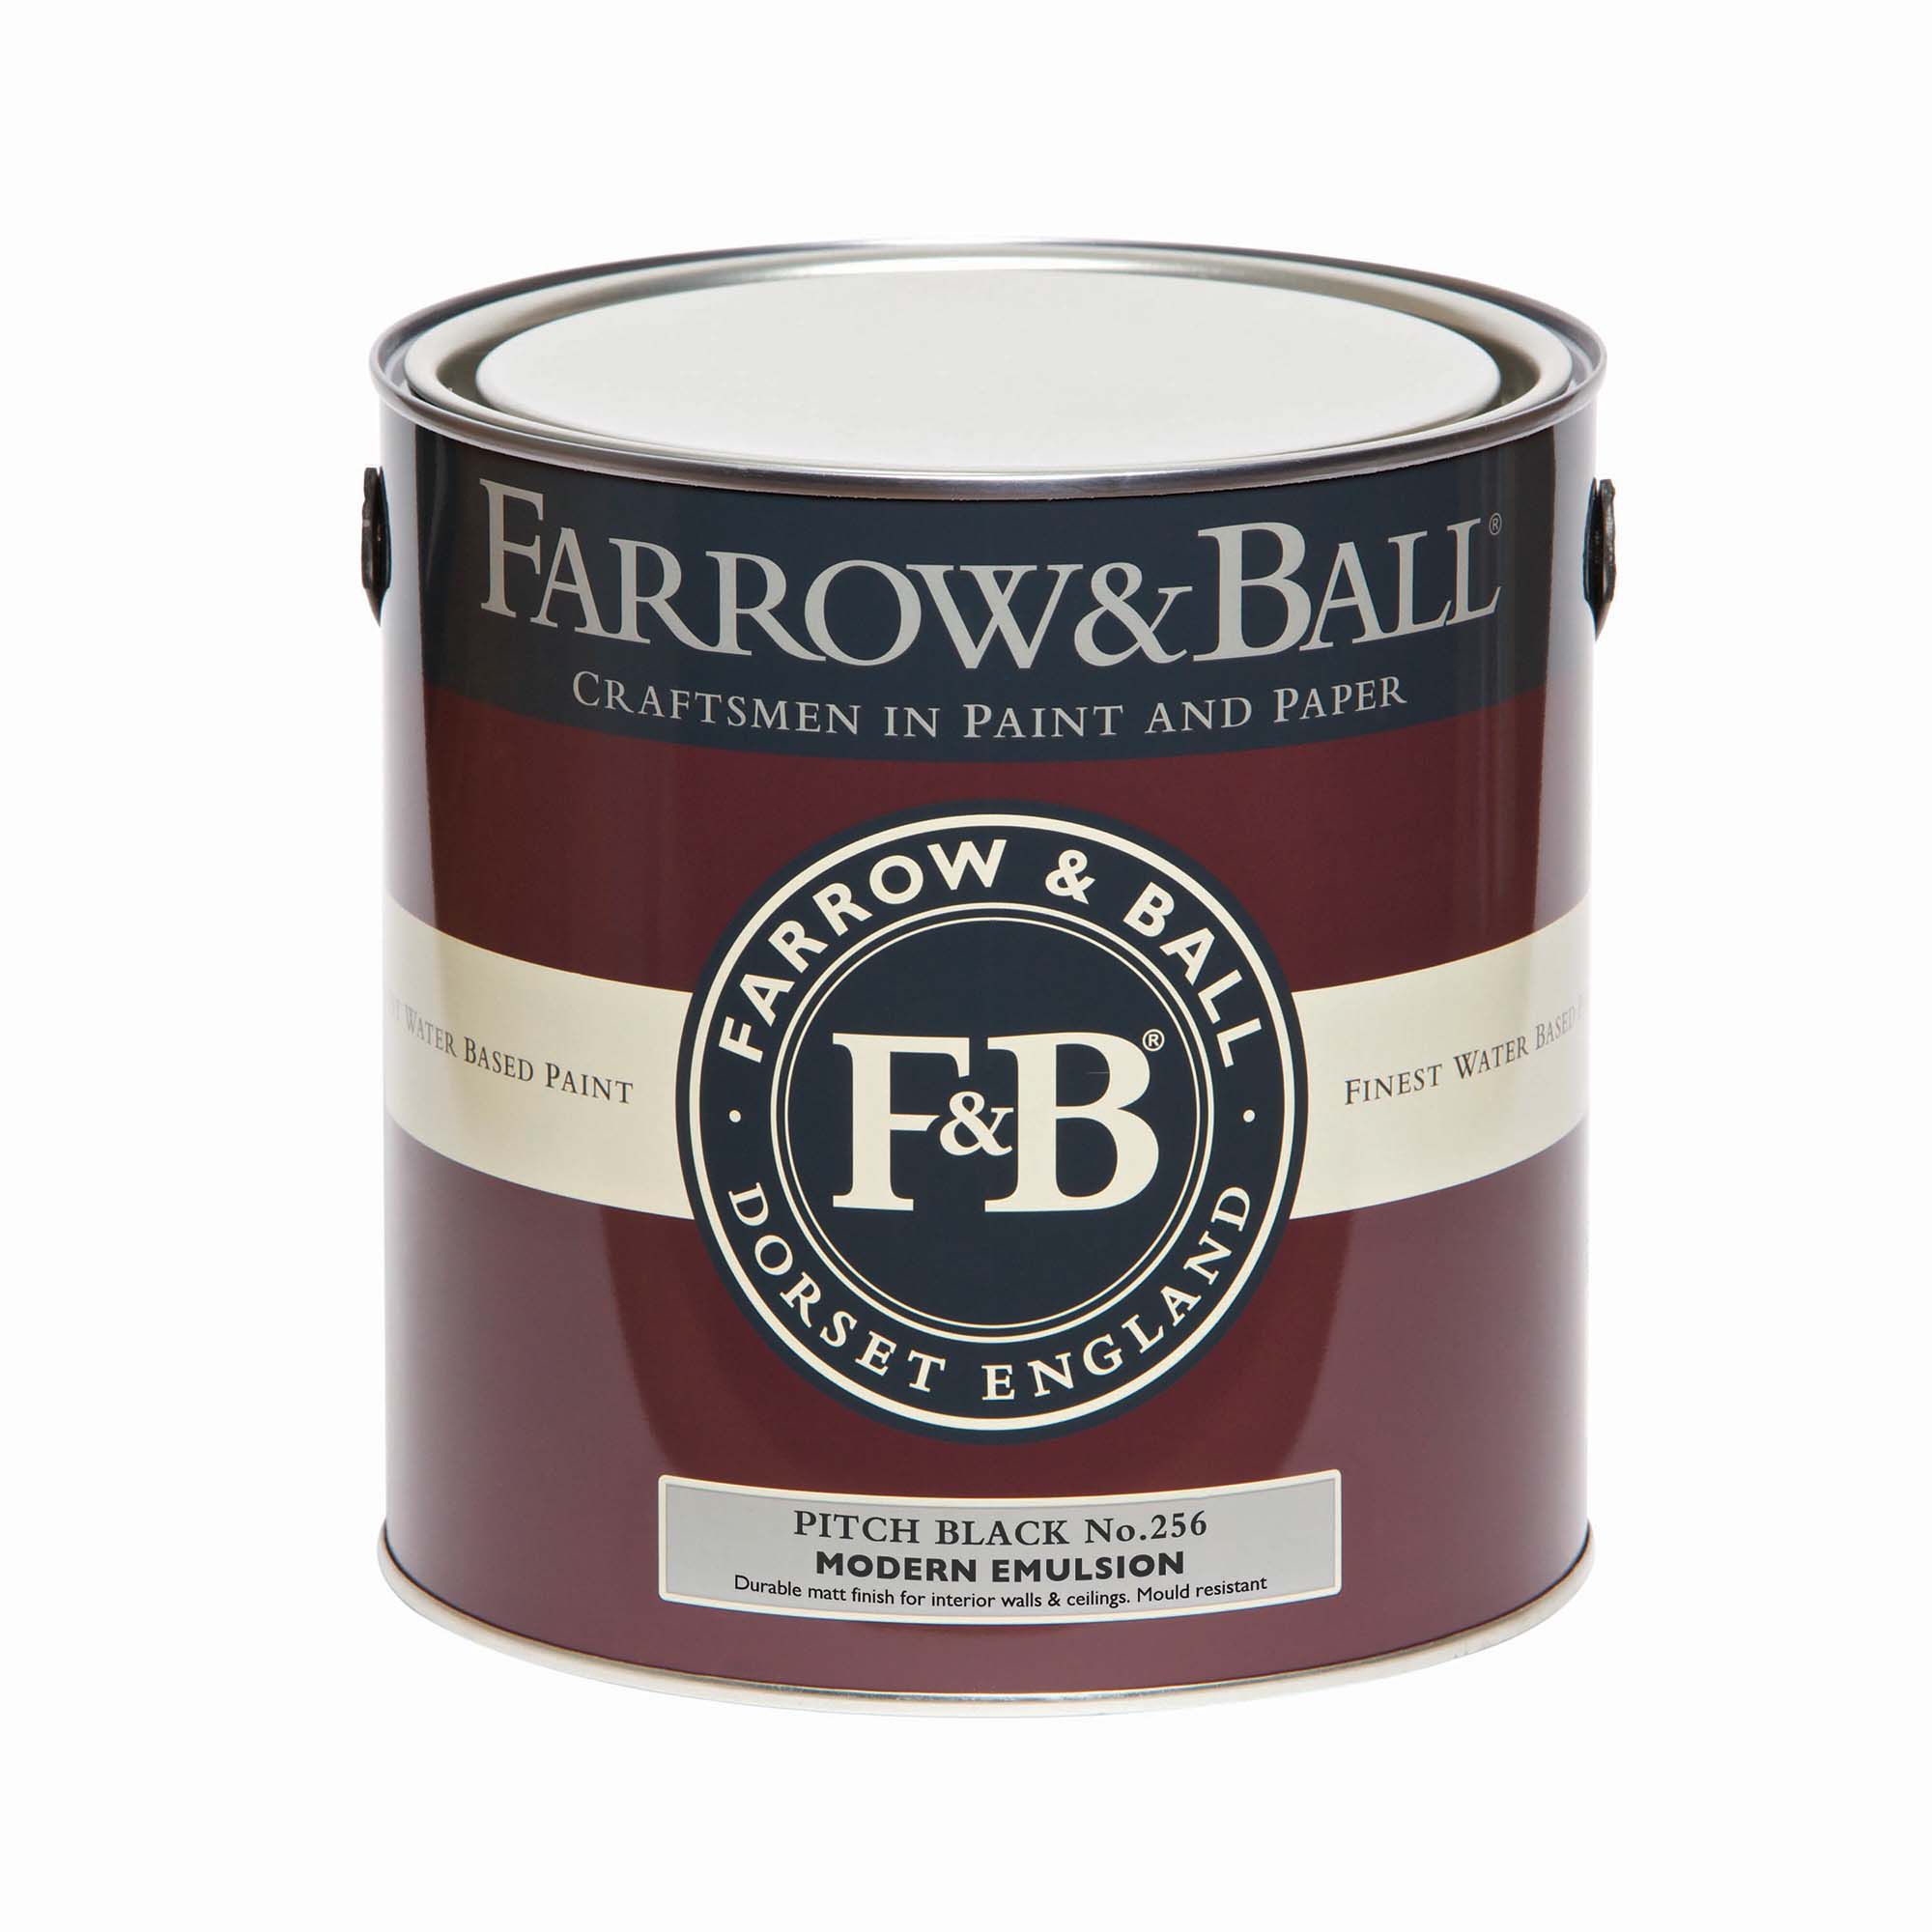 Farrow & Ball Modern Pitch Black No.256 Matt Emulsion paint, 2.5L